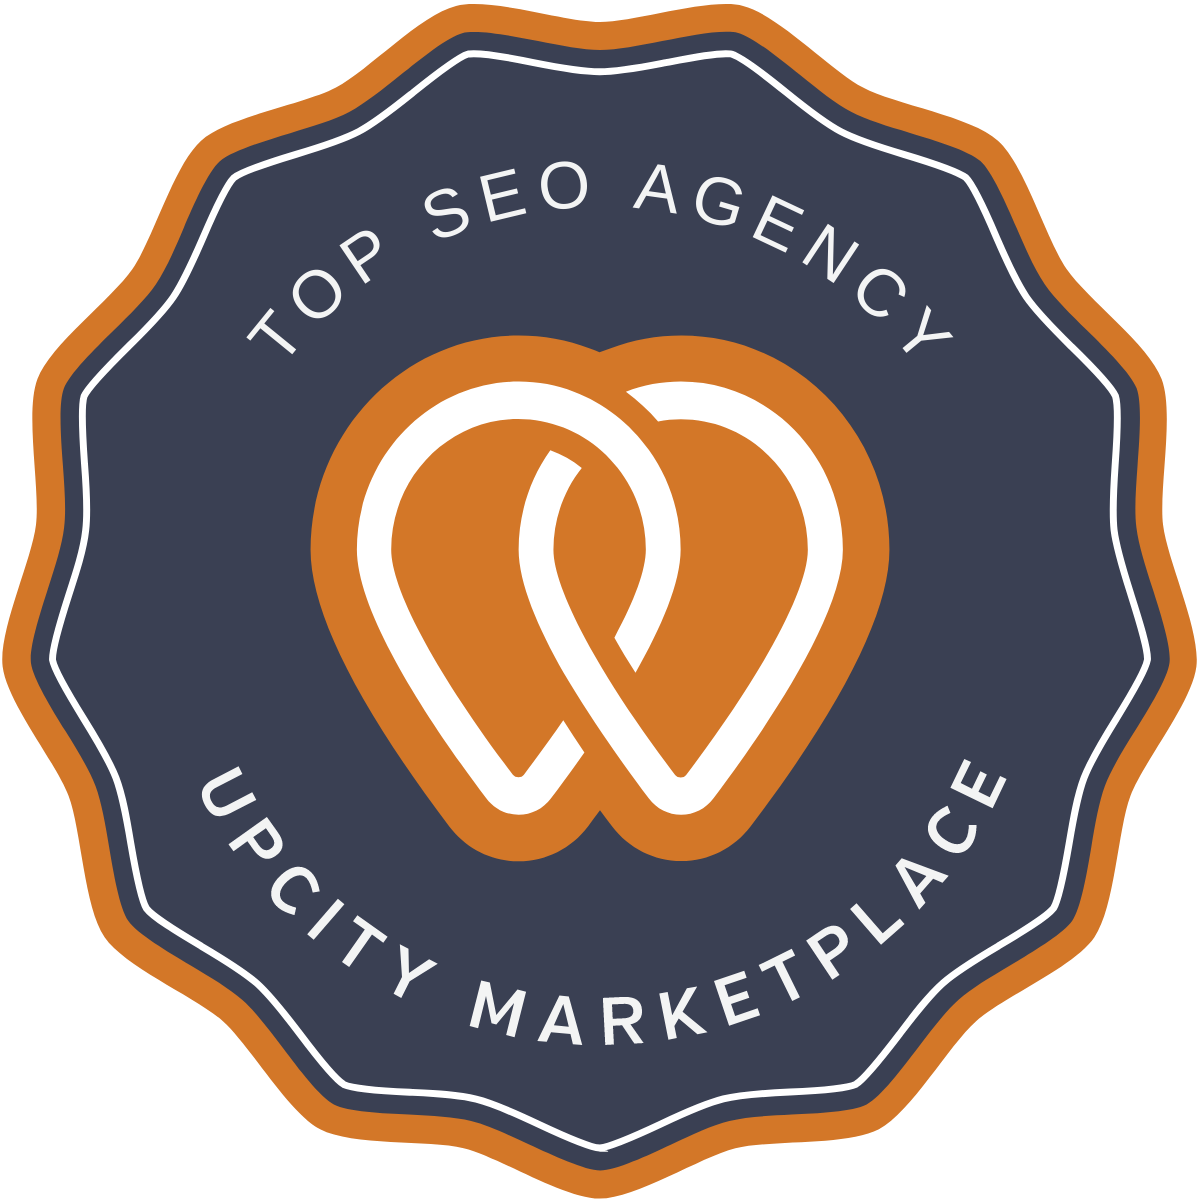 Upcity Top SEO Agency Award